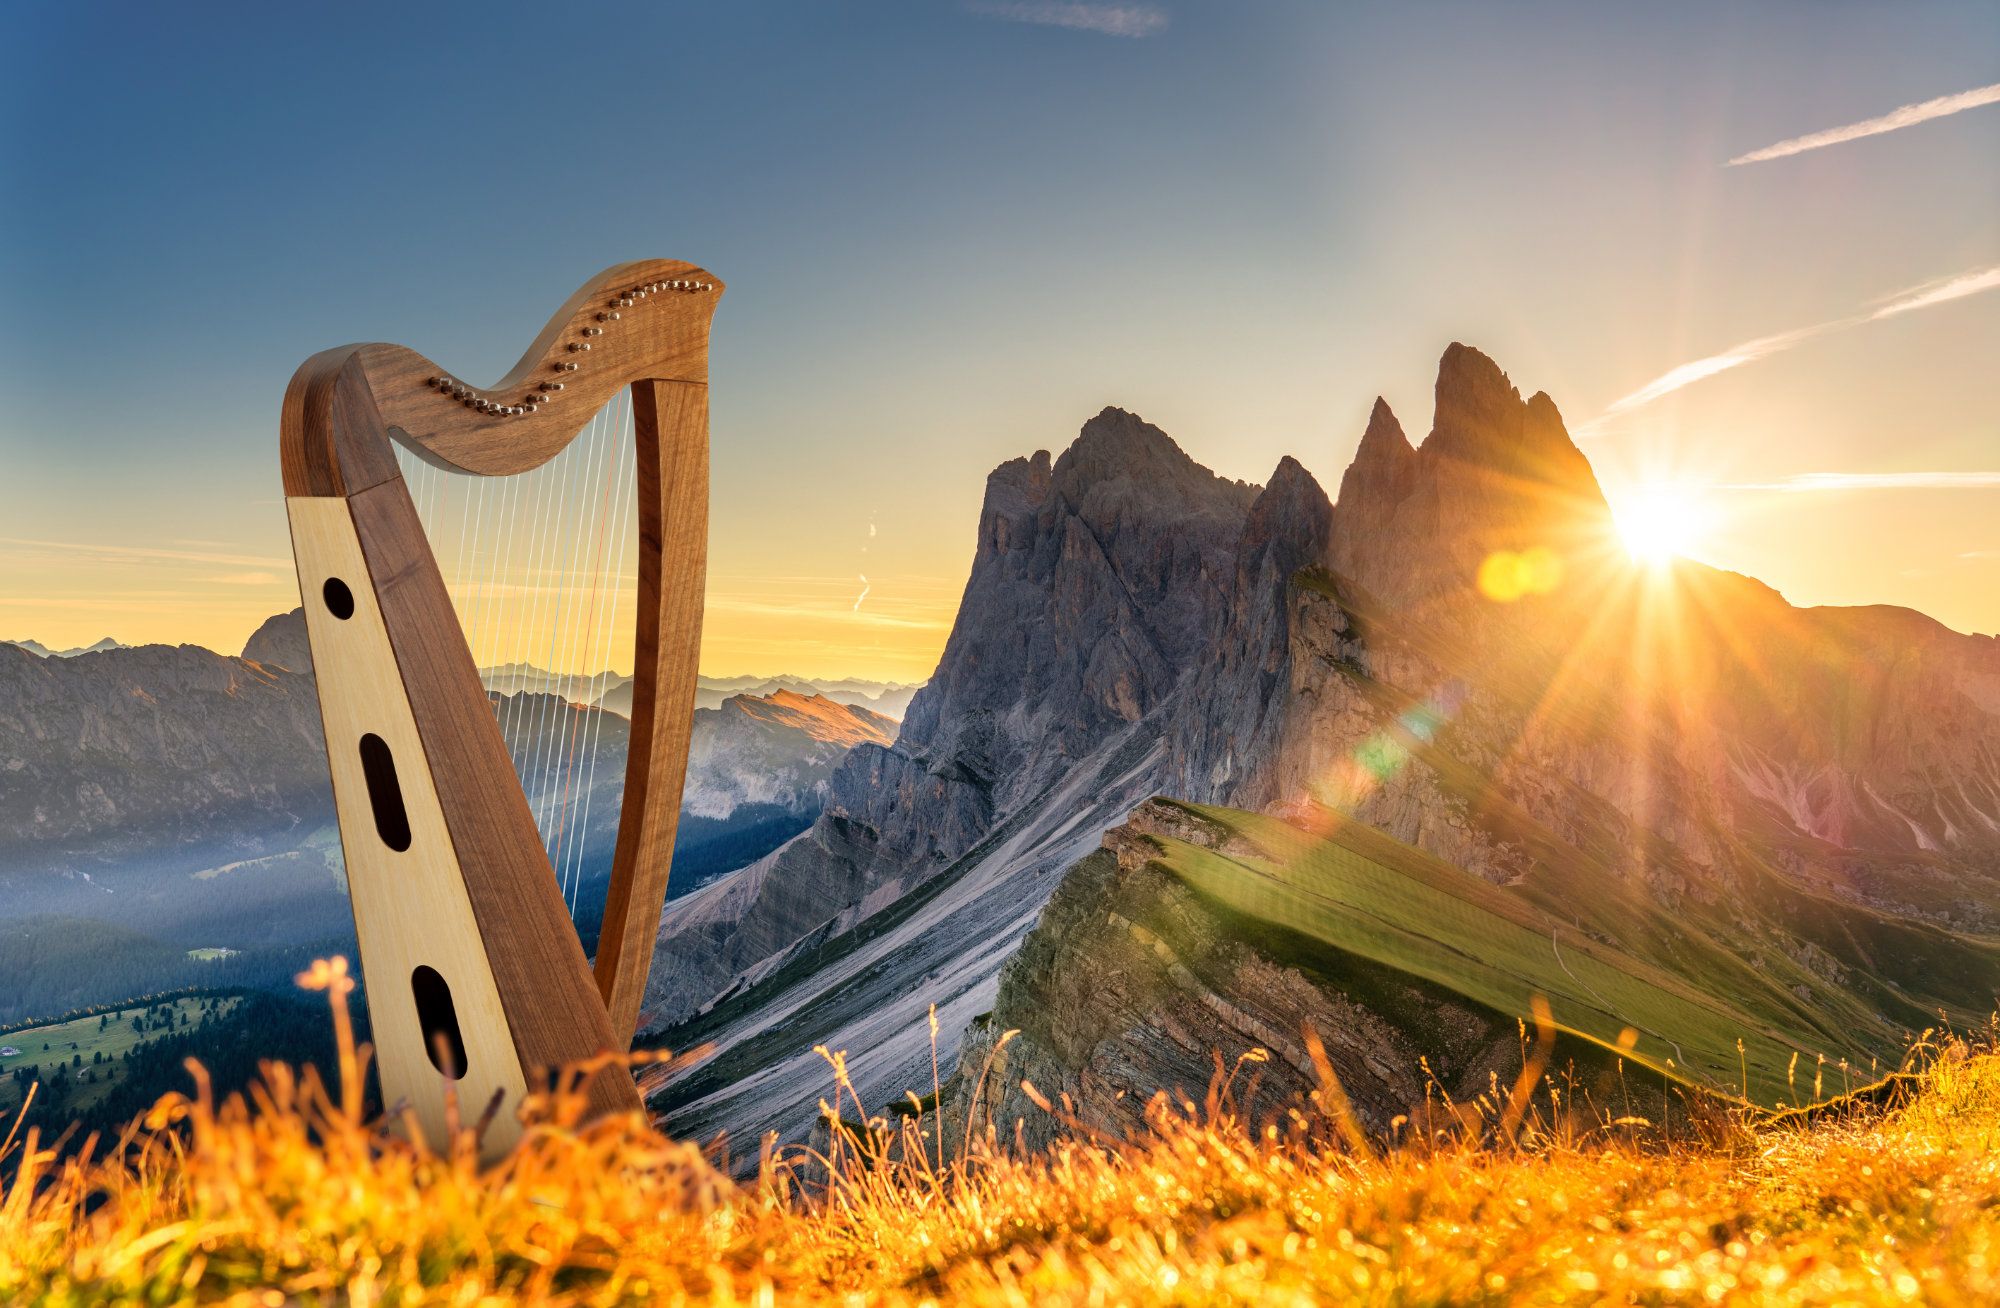 Keltische Harfen für unterwegs, Bühne und zu Hause